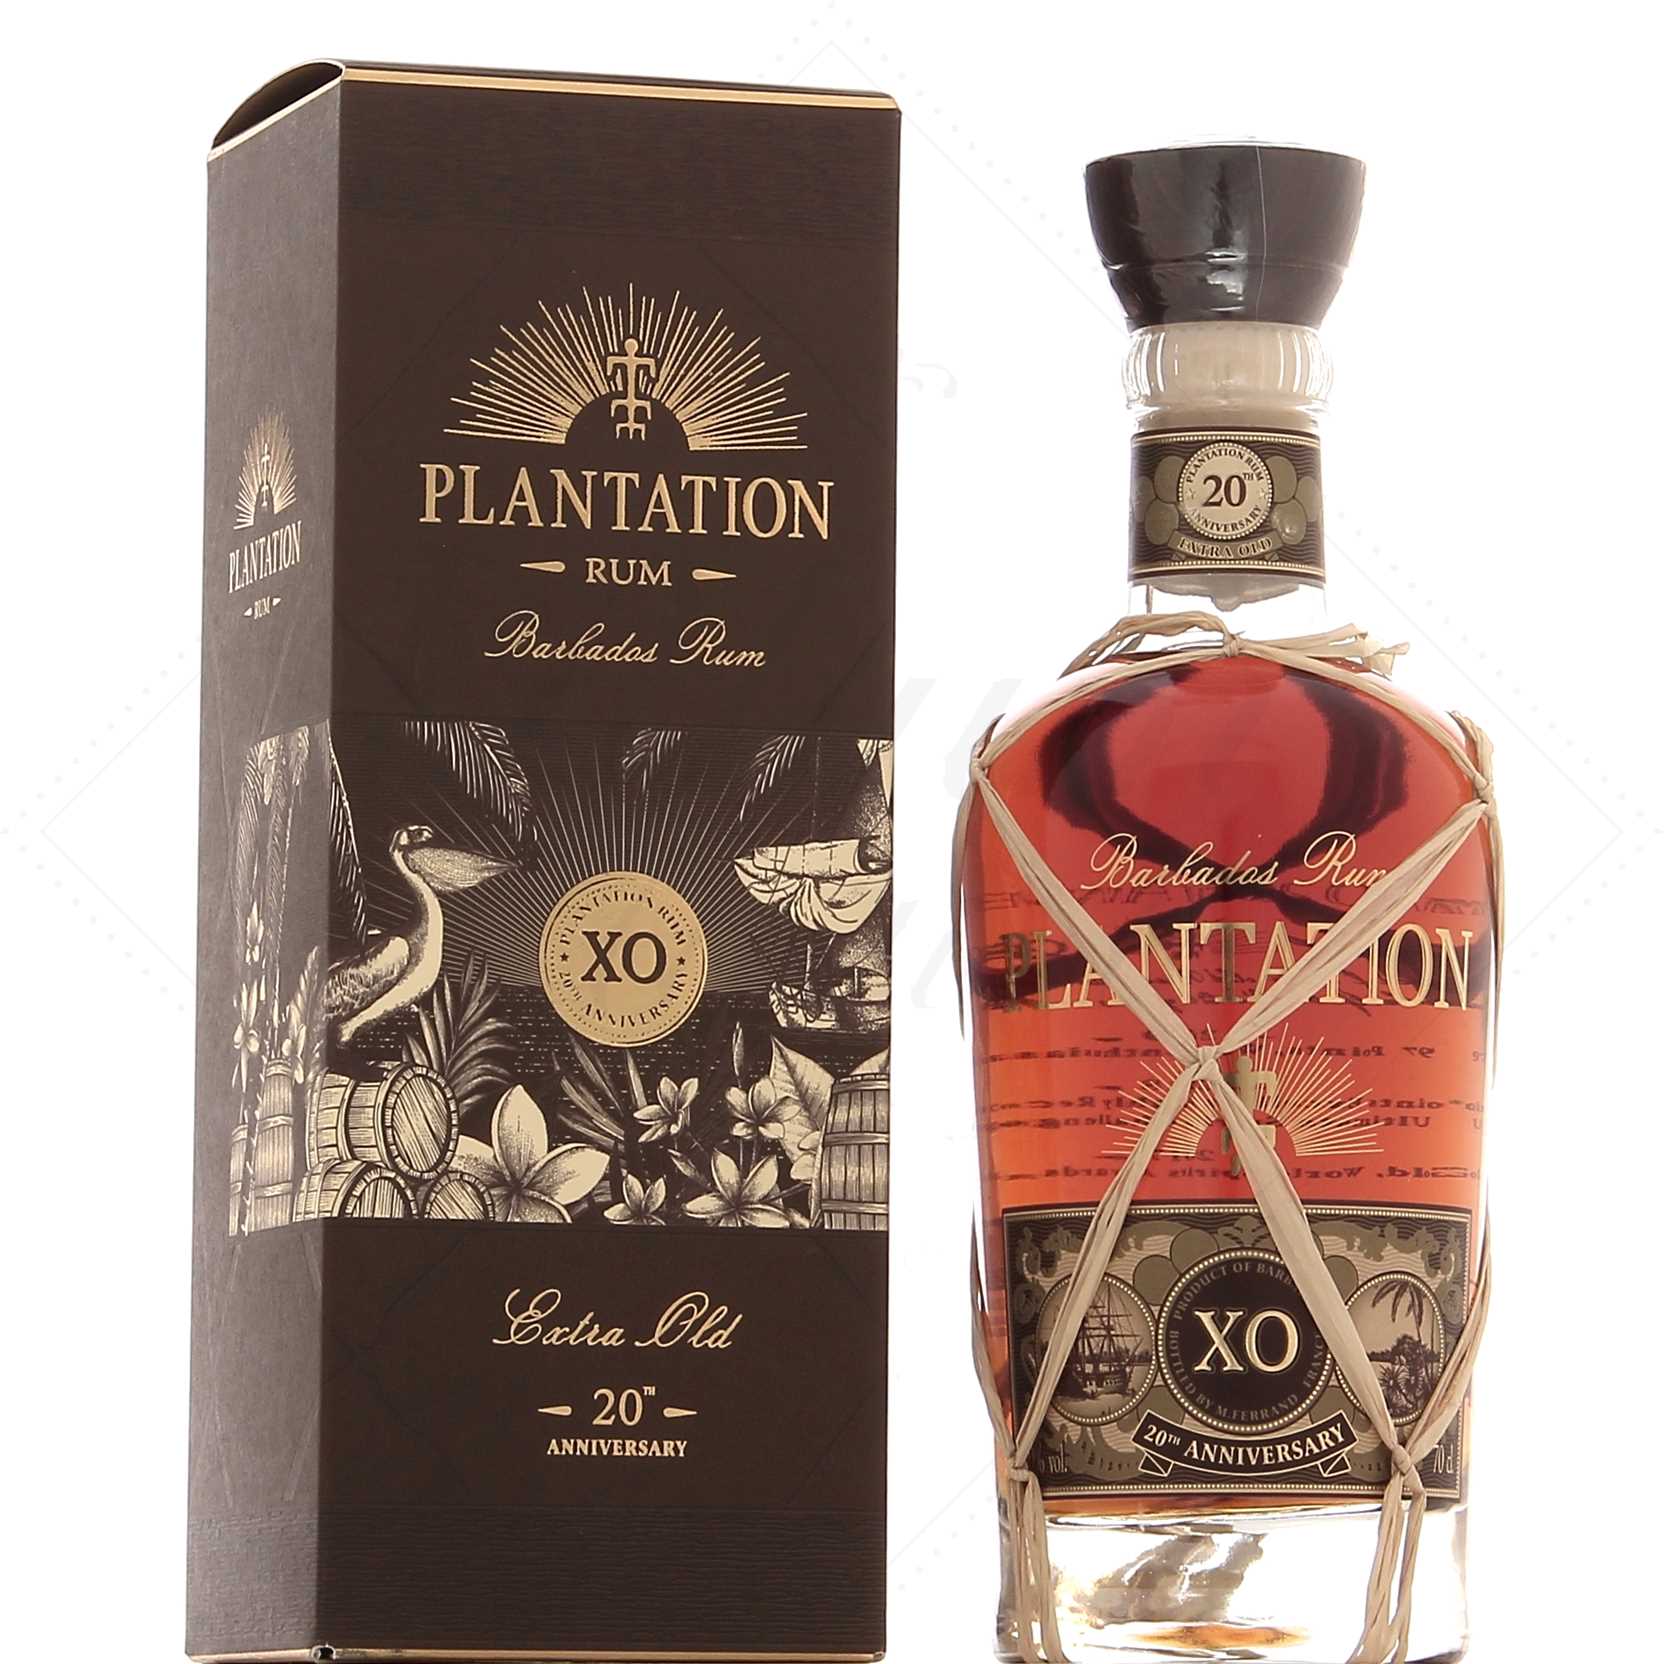 Plantation Rum Experience Coffret 6 flacons de 10cl - Rhum Attitude